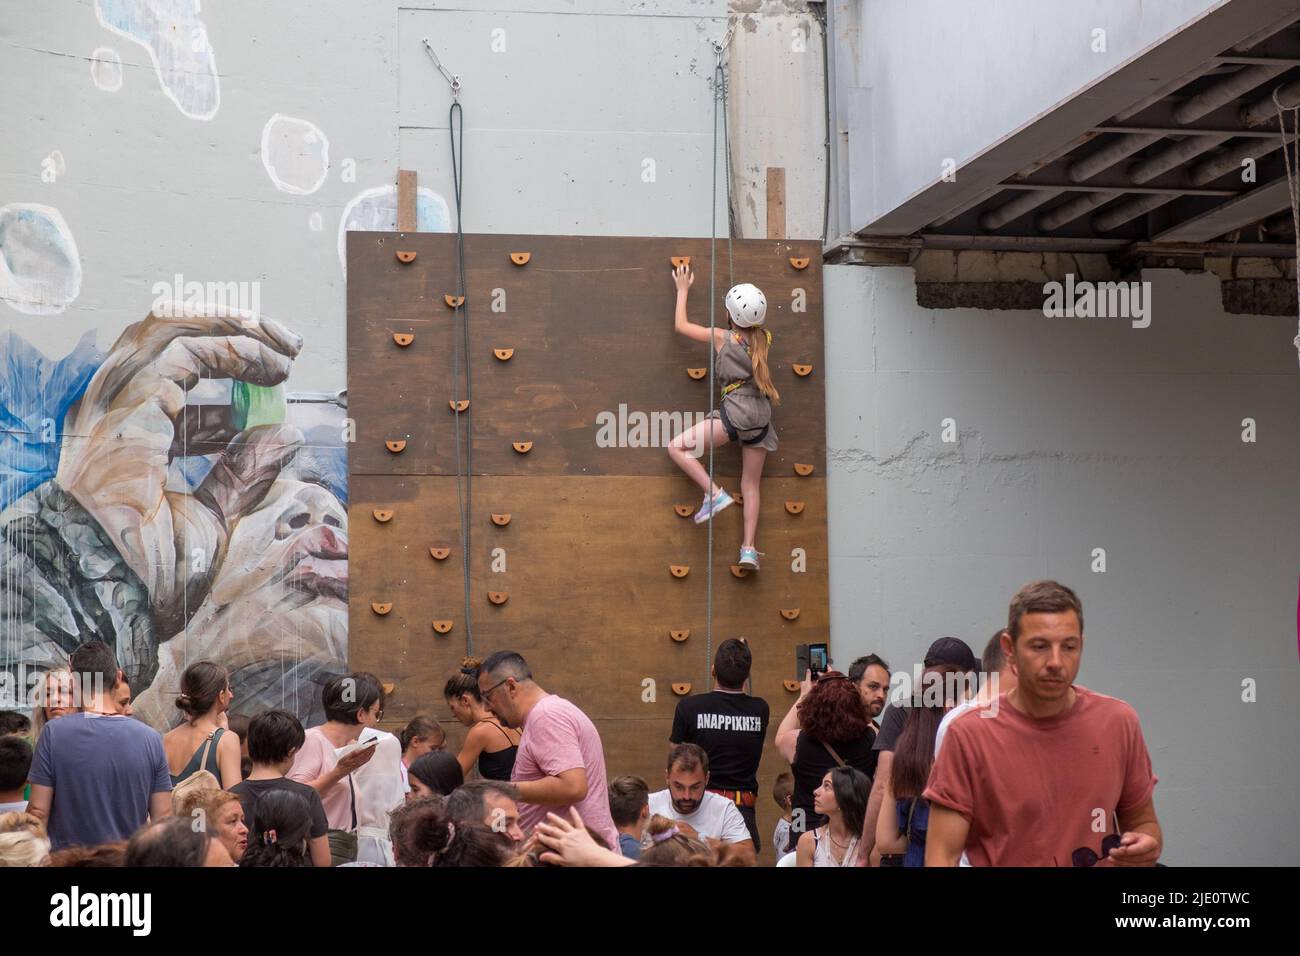 Jeune fille grimpant un mur typé avec une corde pour la sécurité pendant un événement Banque D'Images